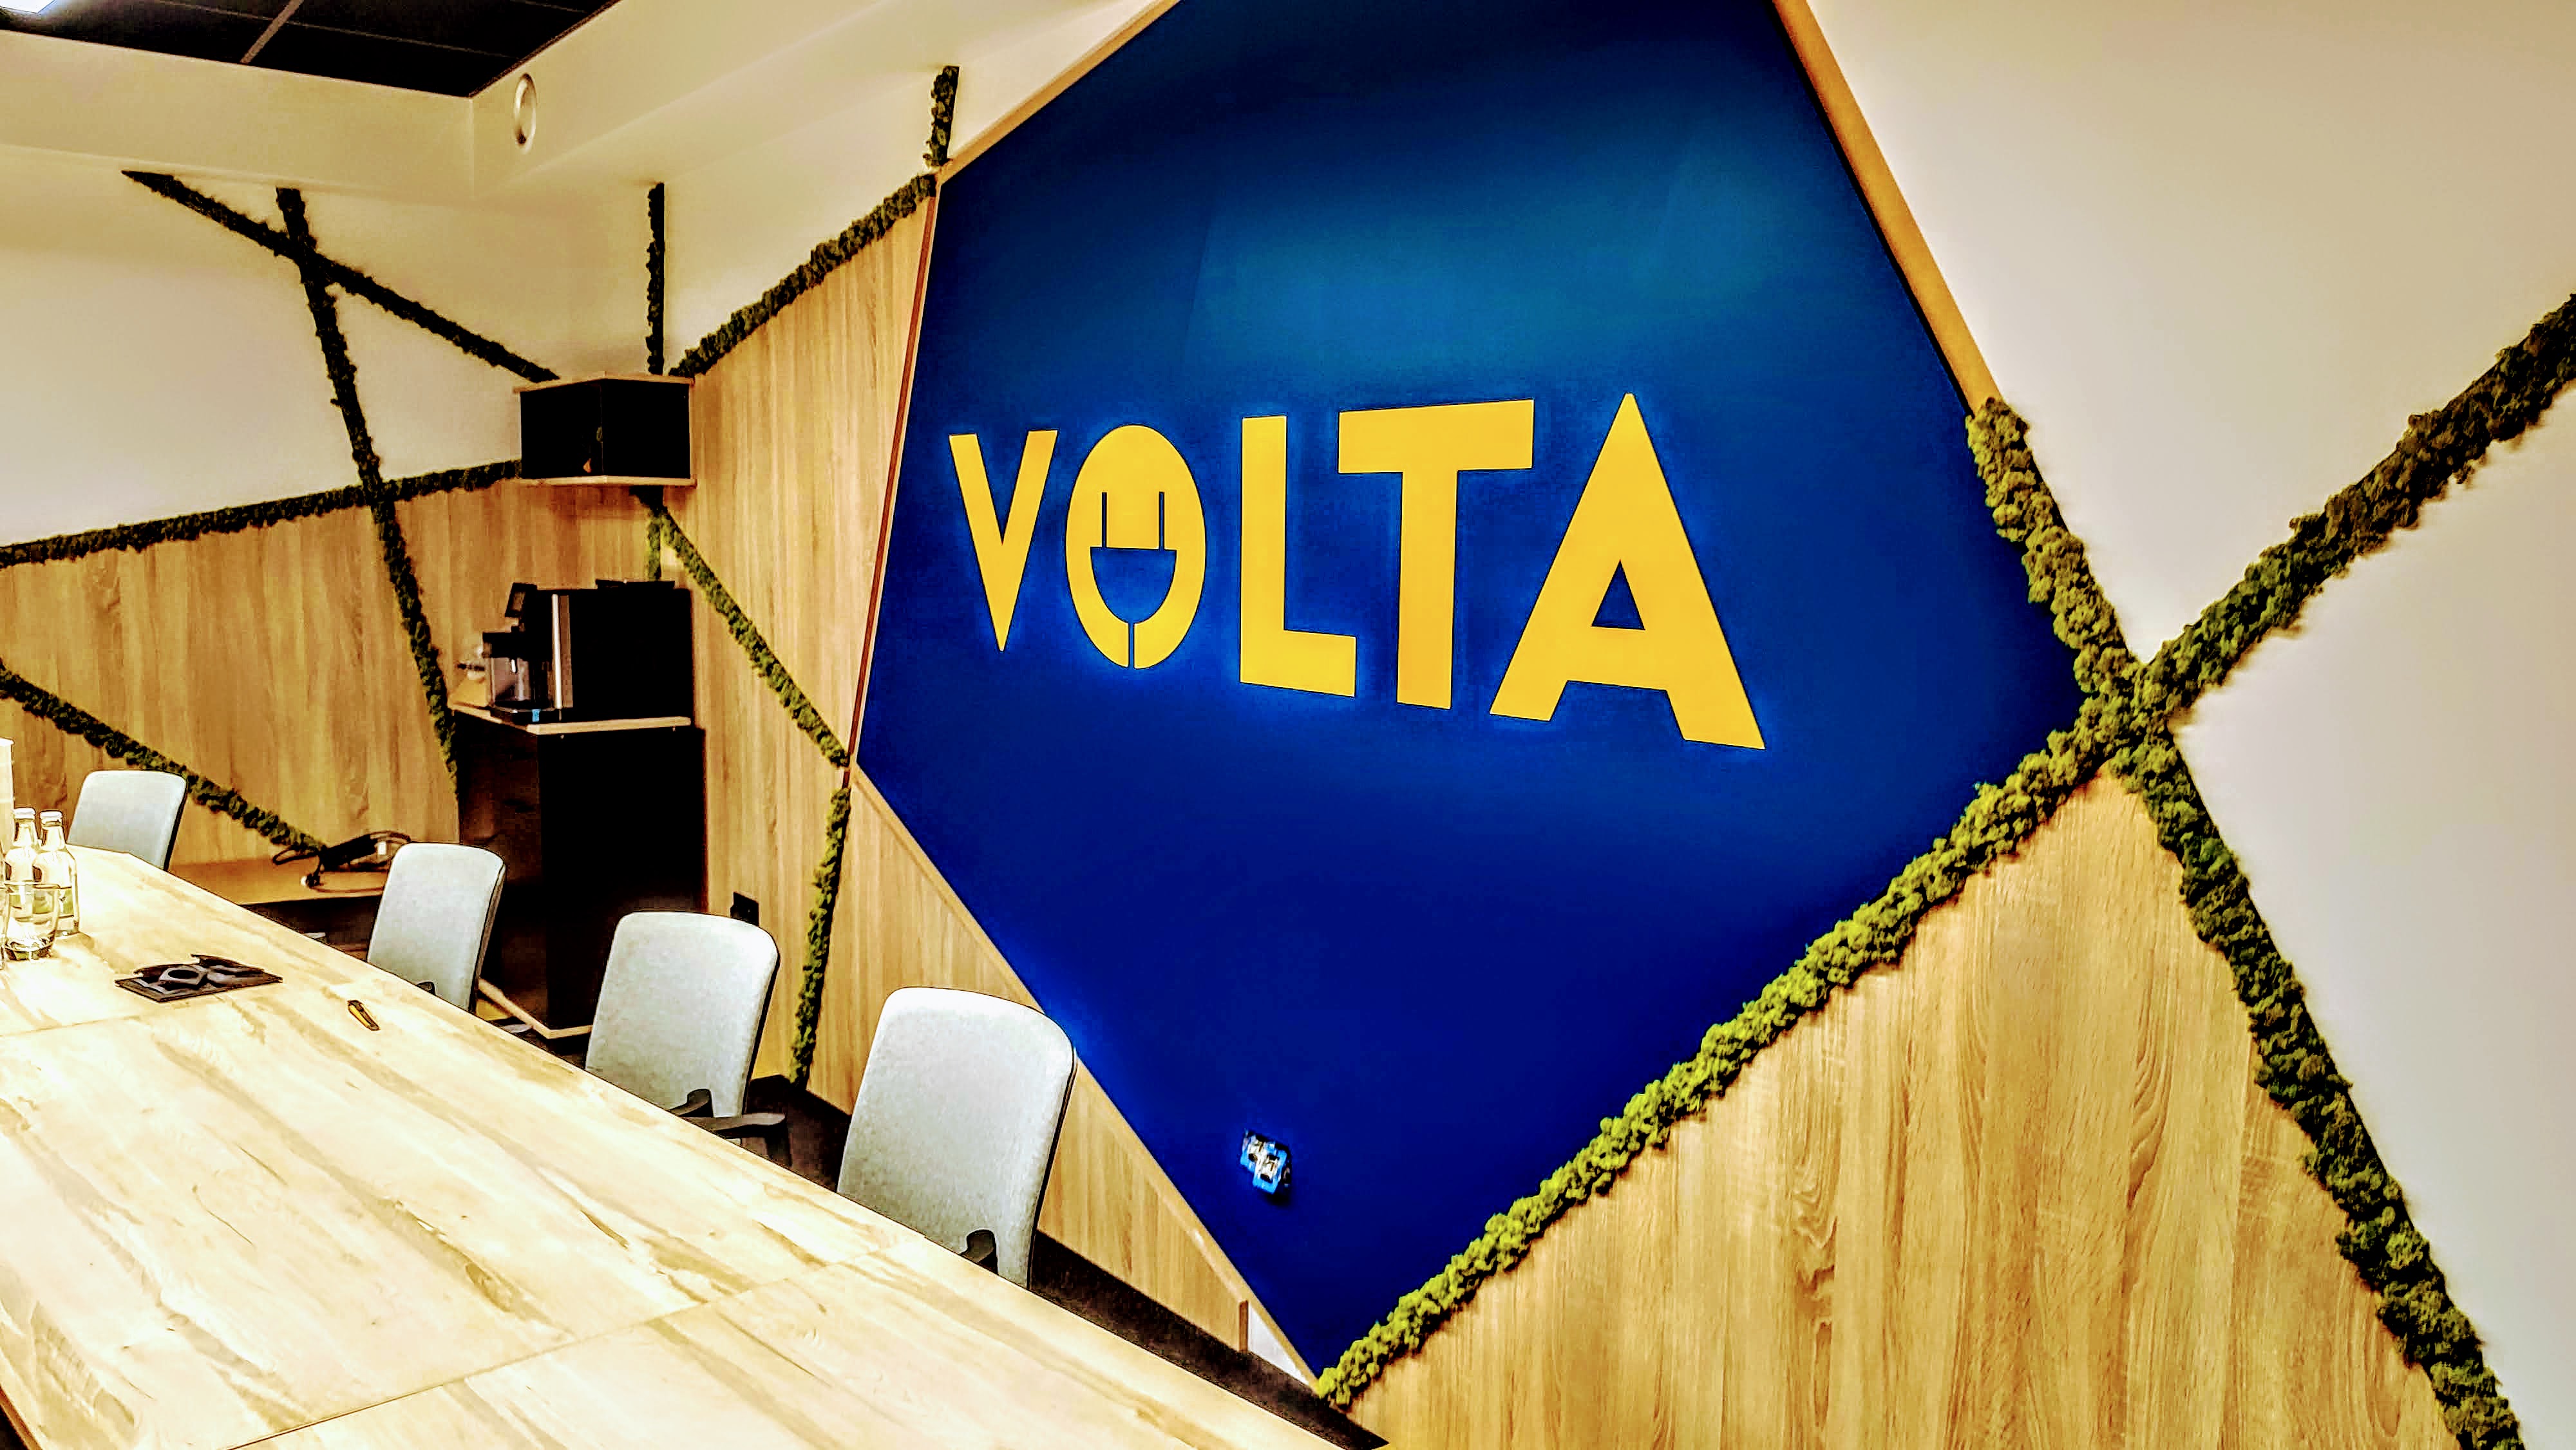 VOLTA - Volta